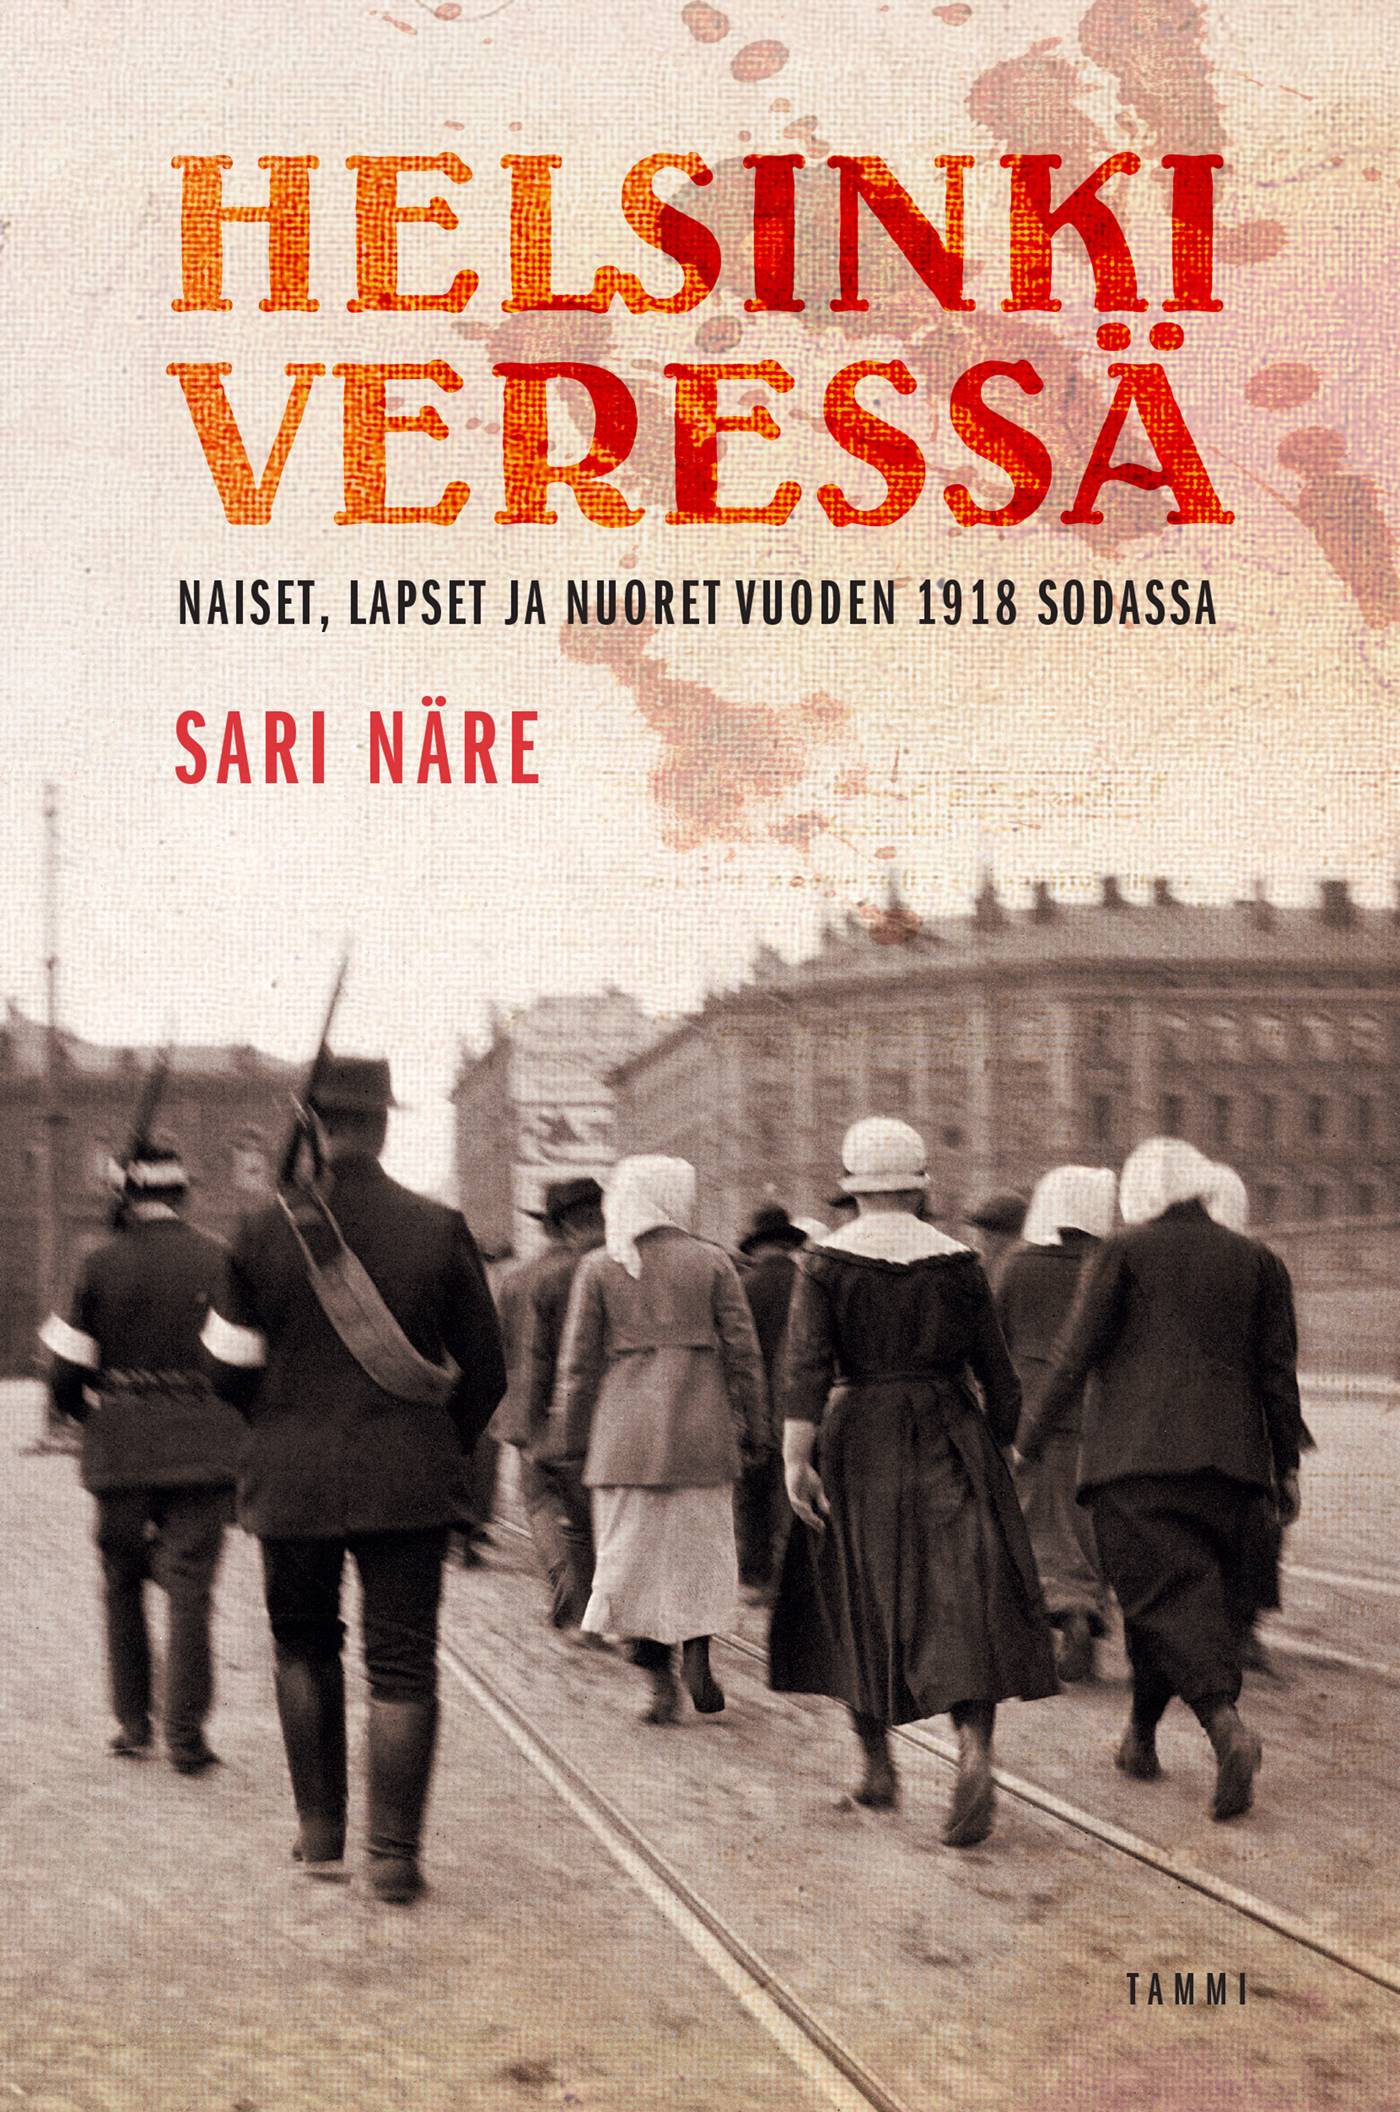 Helsinki veressä : naiset, lapset ja nuoret vuoden 1918 sodassa